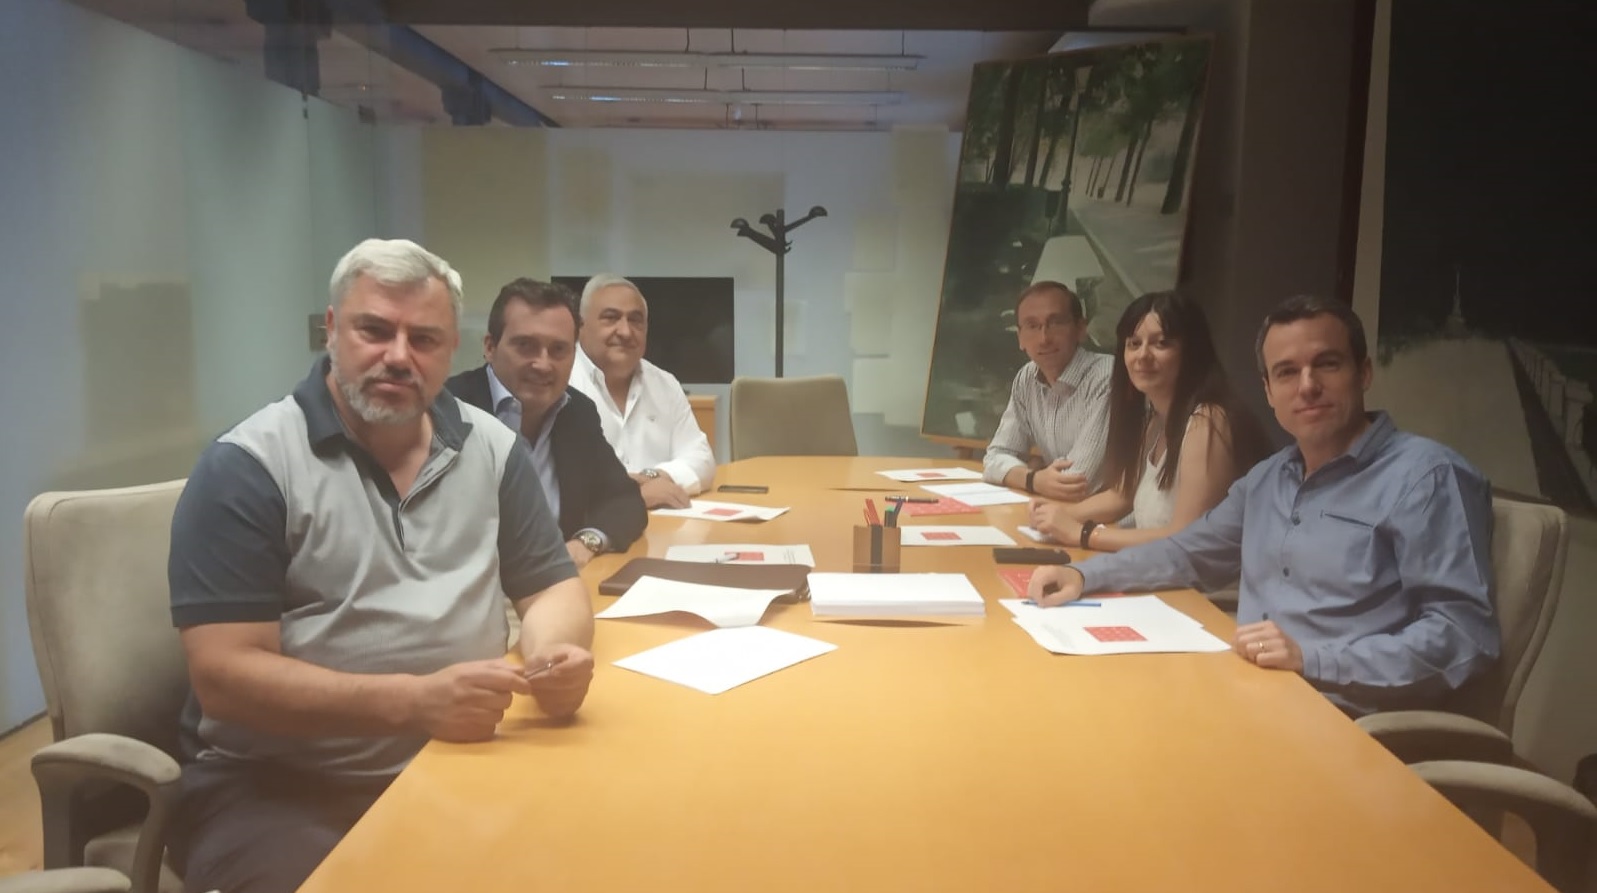 Hostelería Madrid se reúne con el Concejal de Retiro para colaborar en el desarrollo del barrio - La Viña